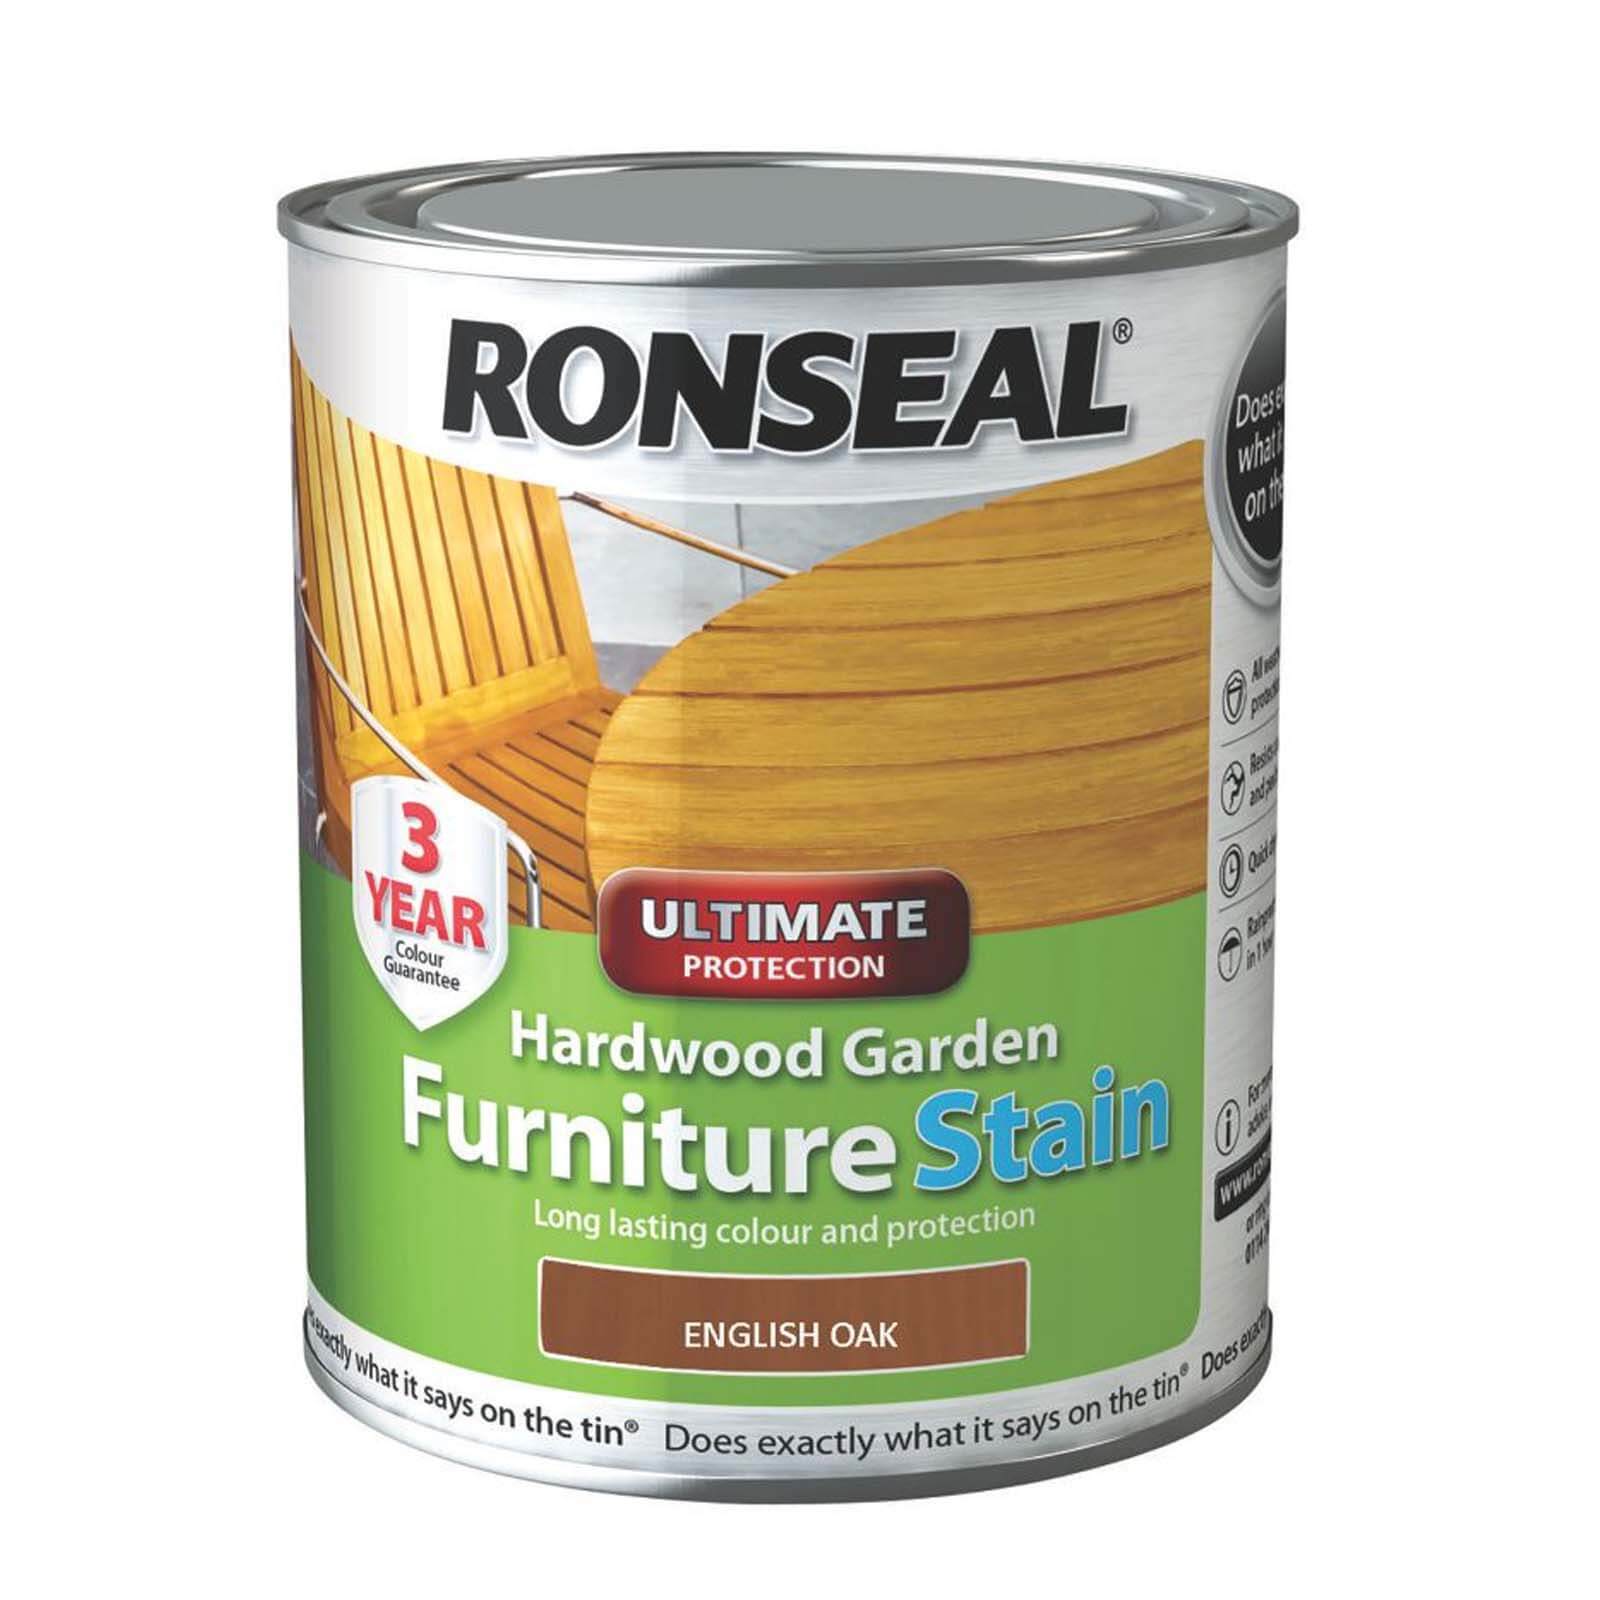 Ronseal Hardwood Garden Furniture Stain English Oak - 750ml